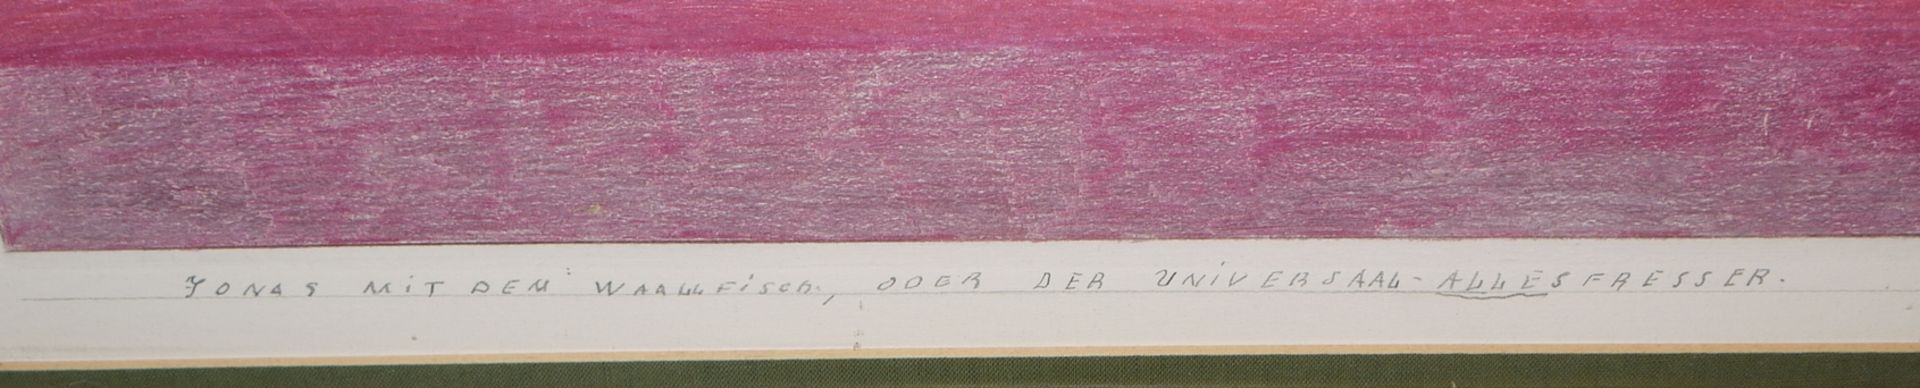 Friedrich Schroeder Sonnenstern, "Jonas mit dem Waallfisch, oder der Universaal-Allesfresser", groß - Bild 8 aus 9